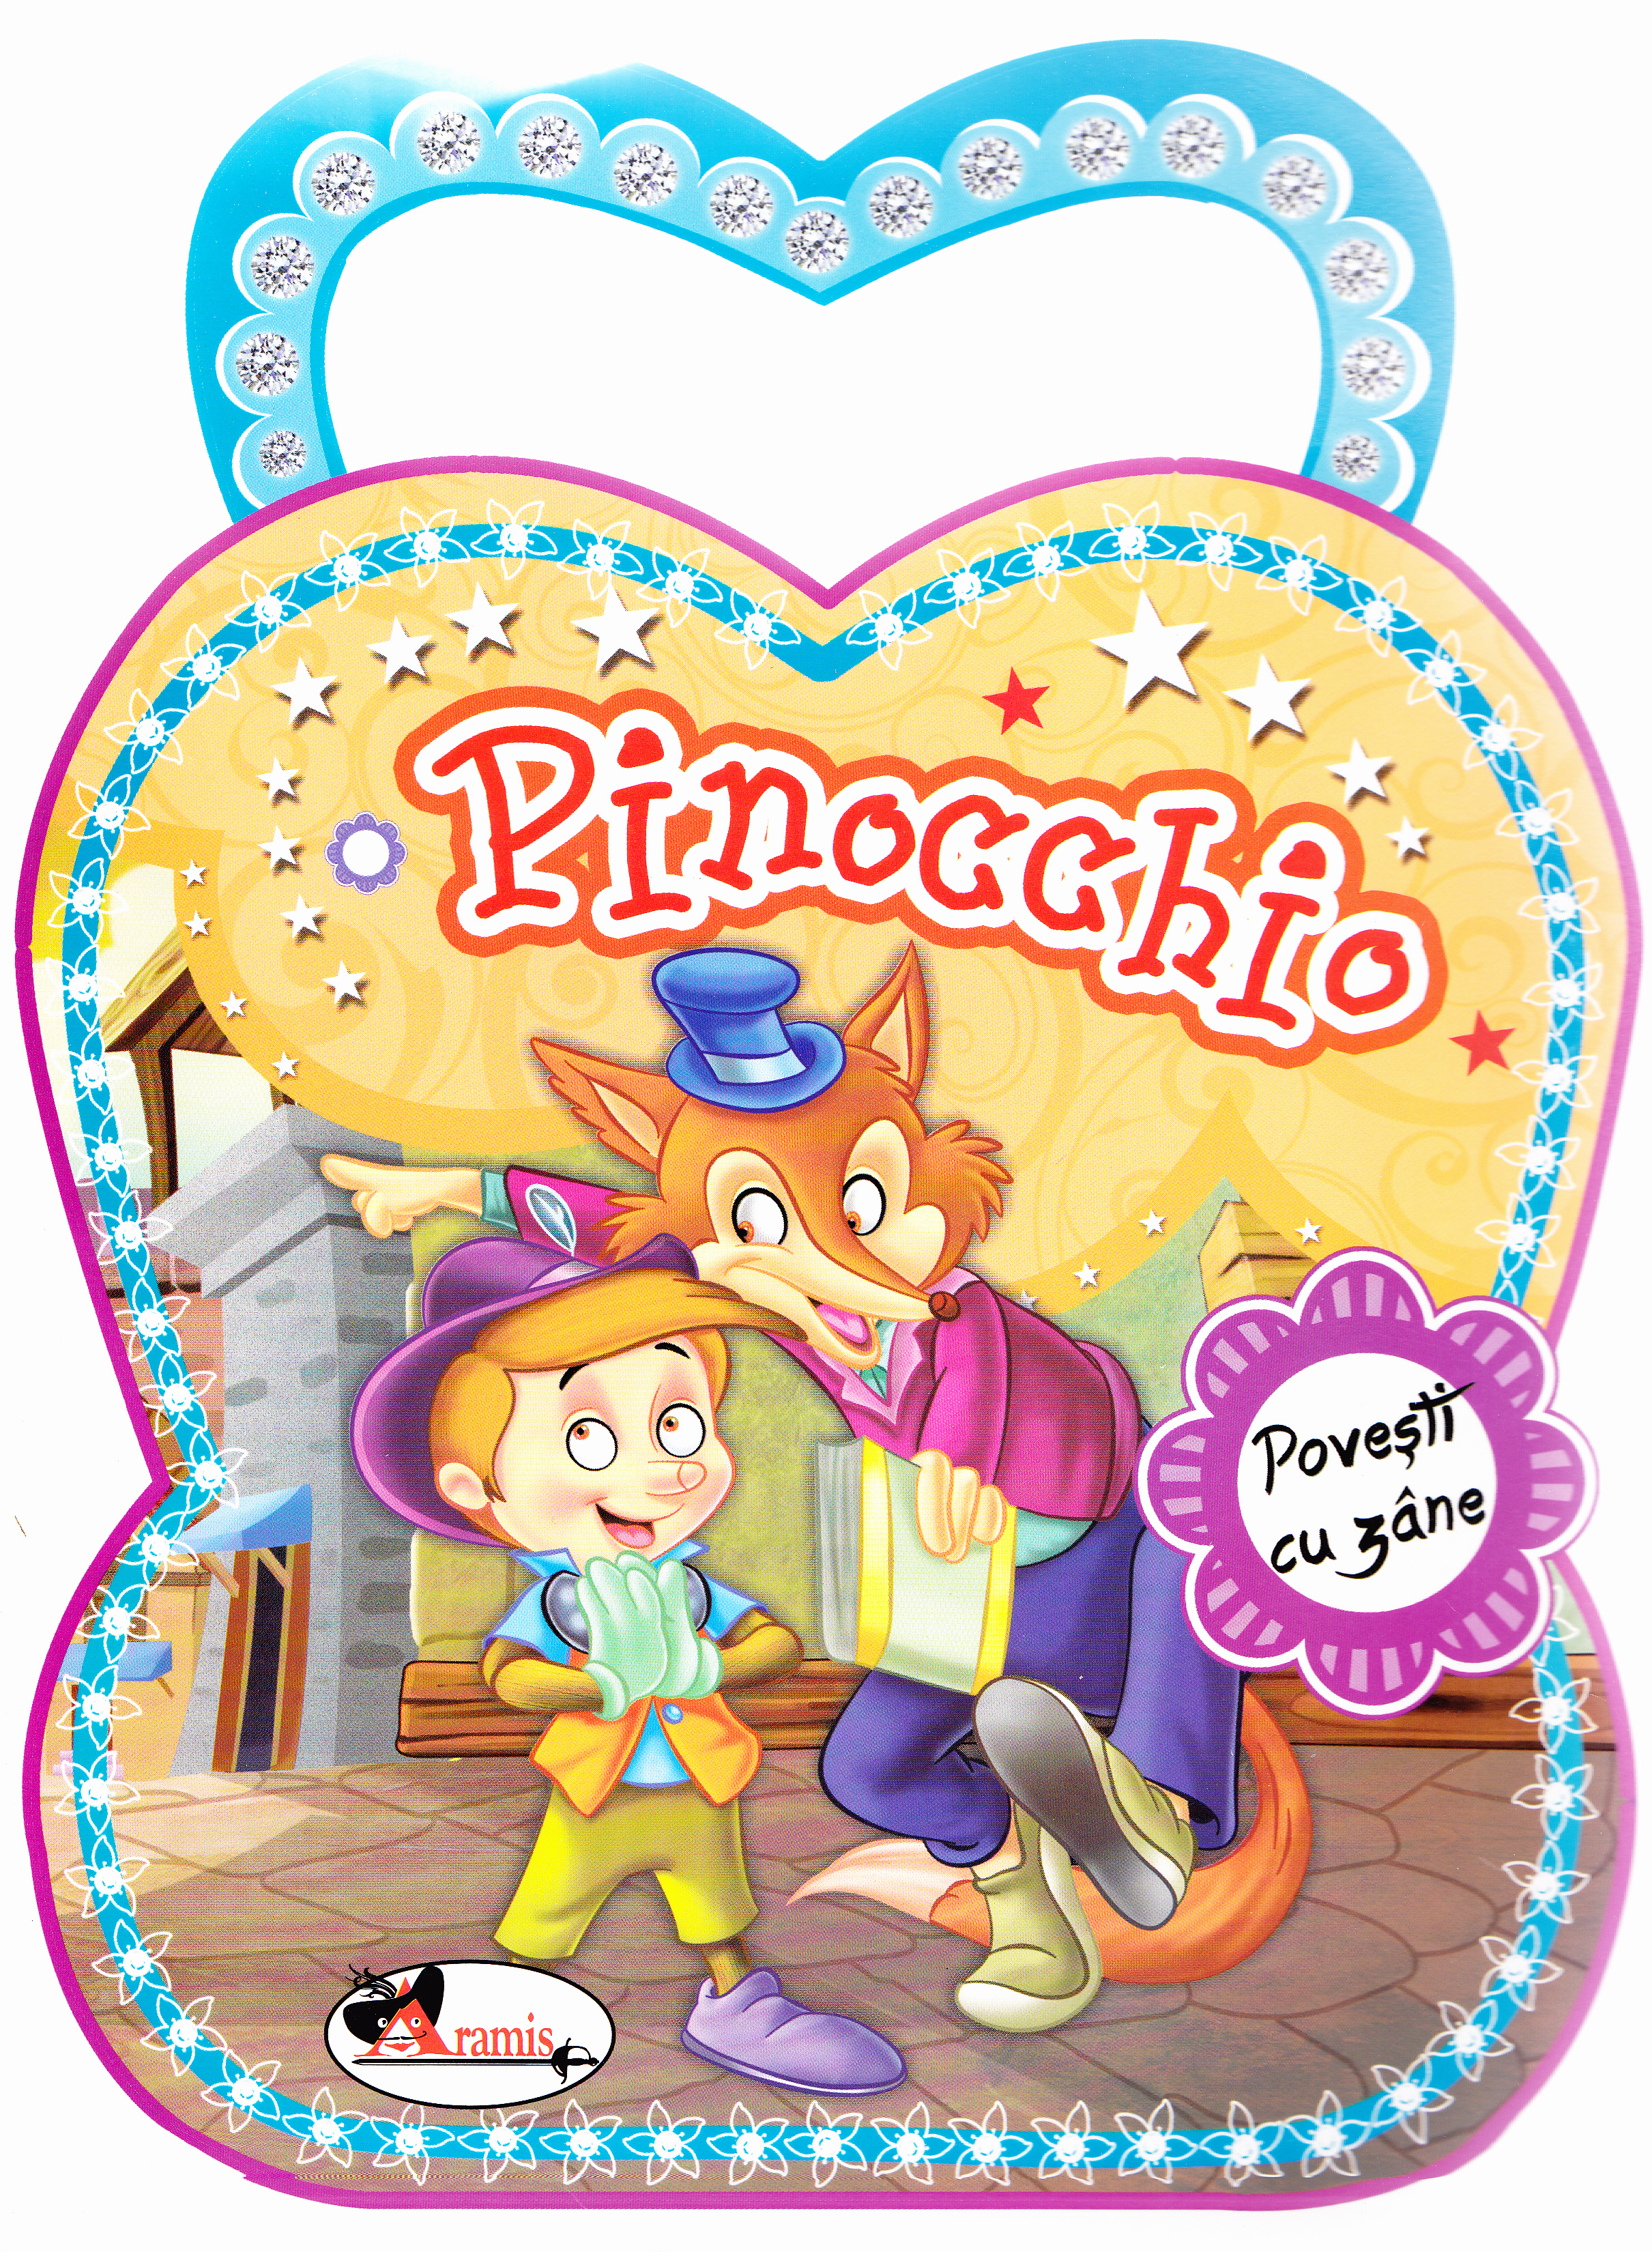 Pinocchio - Povesti cu zane